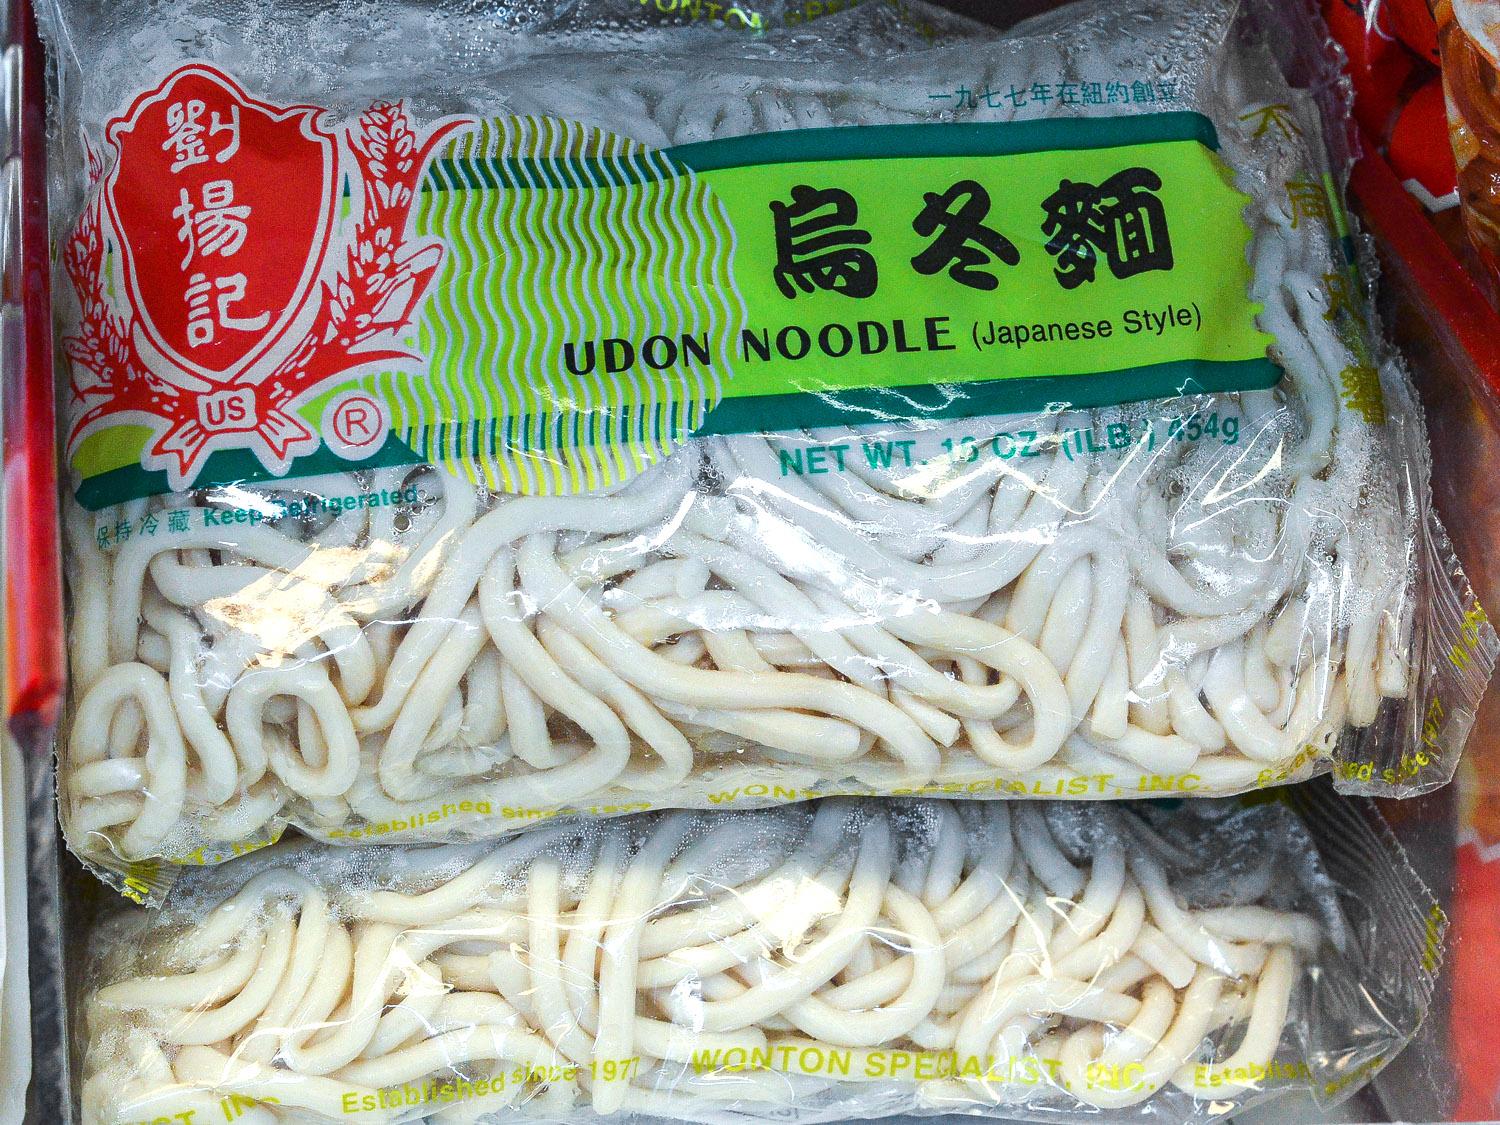 Asian noodle shop